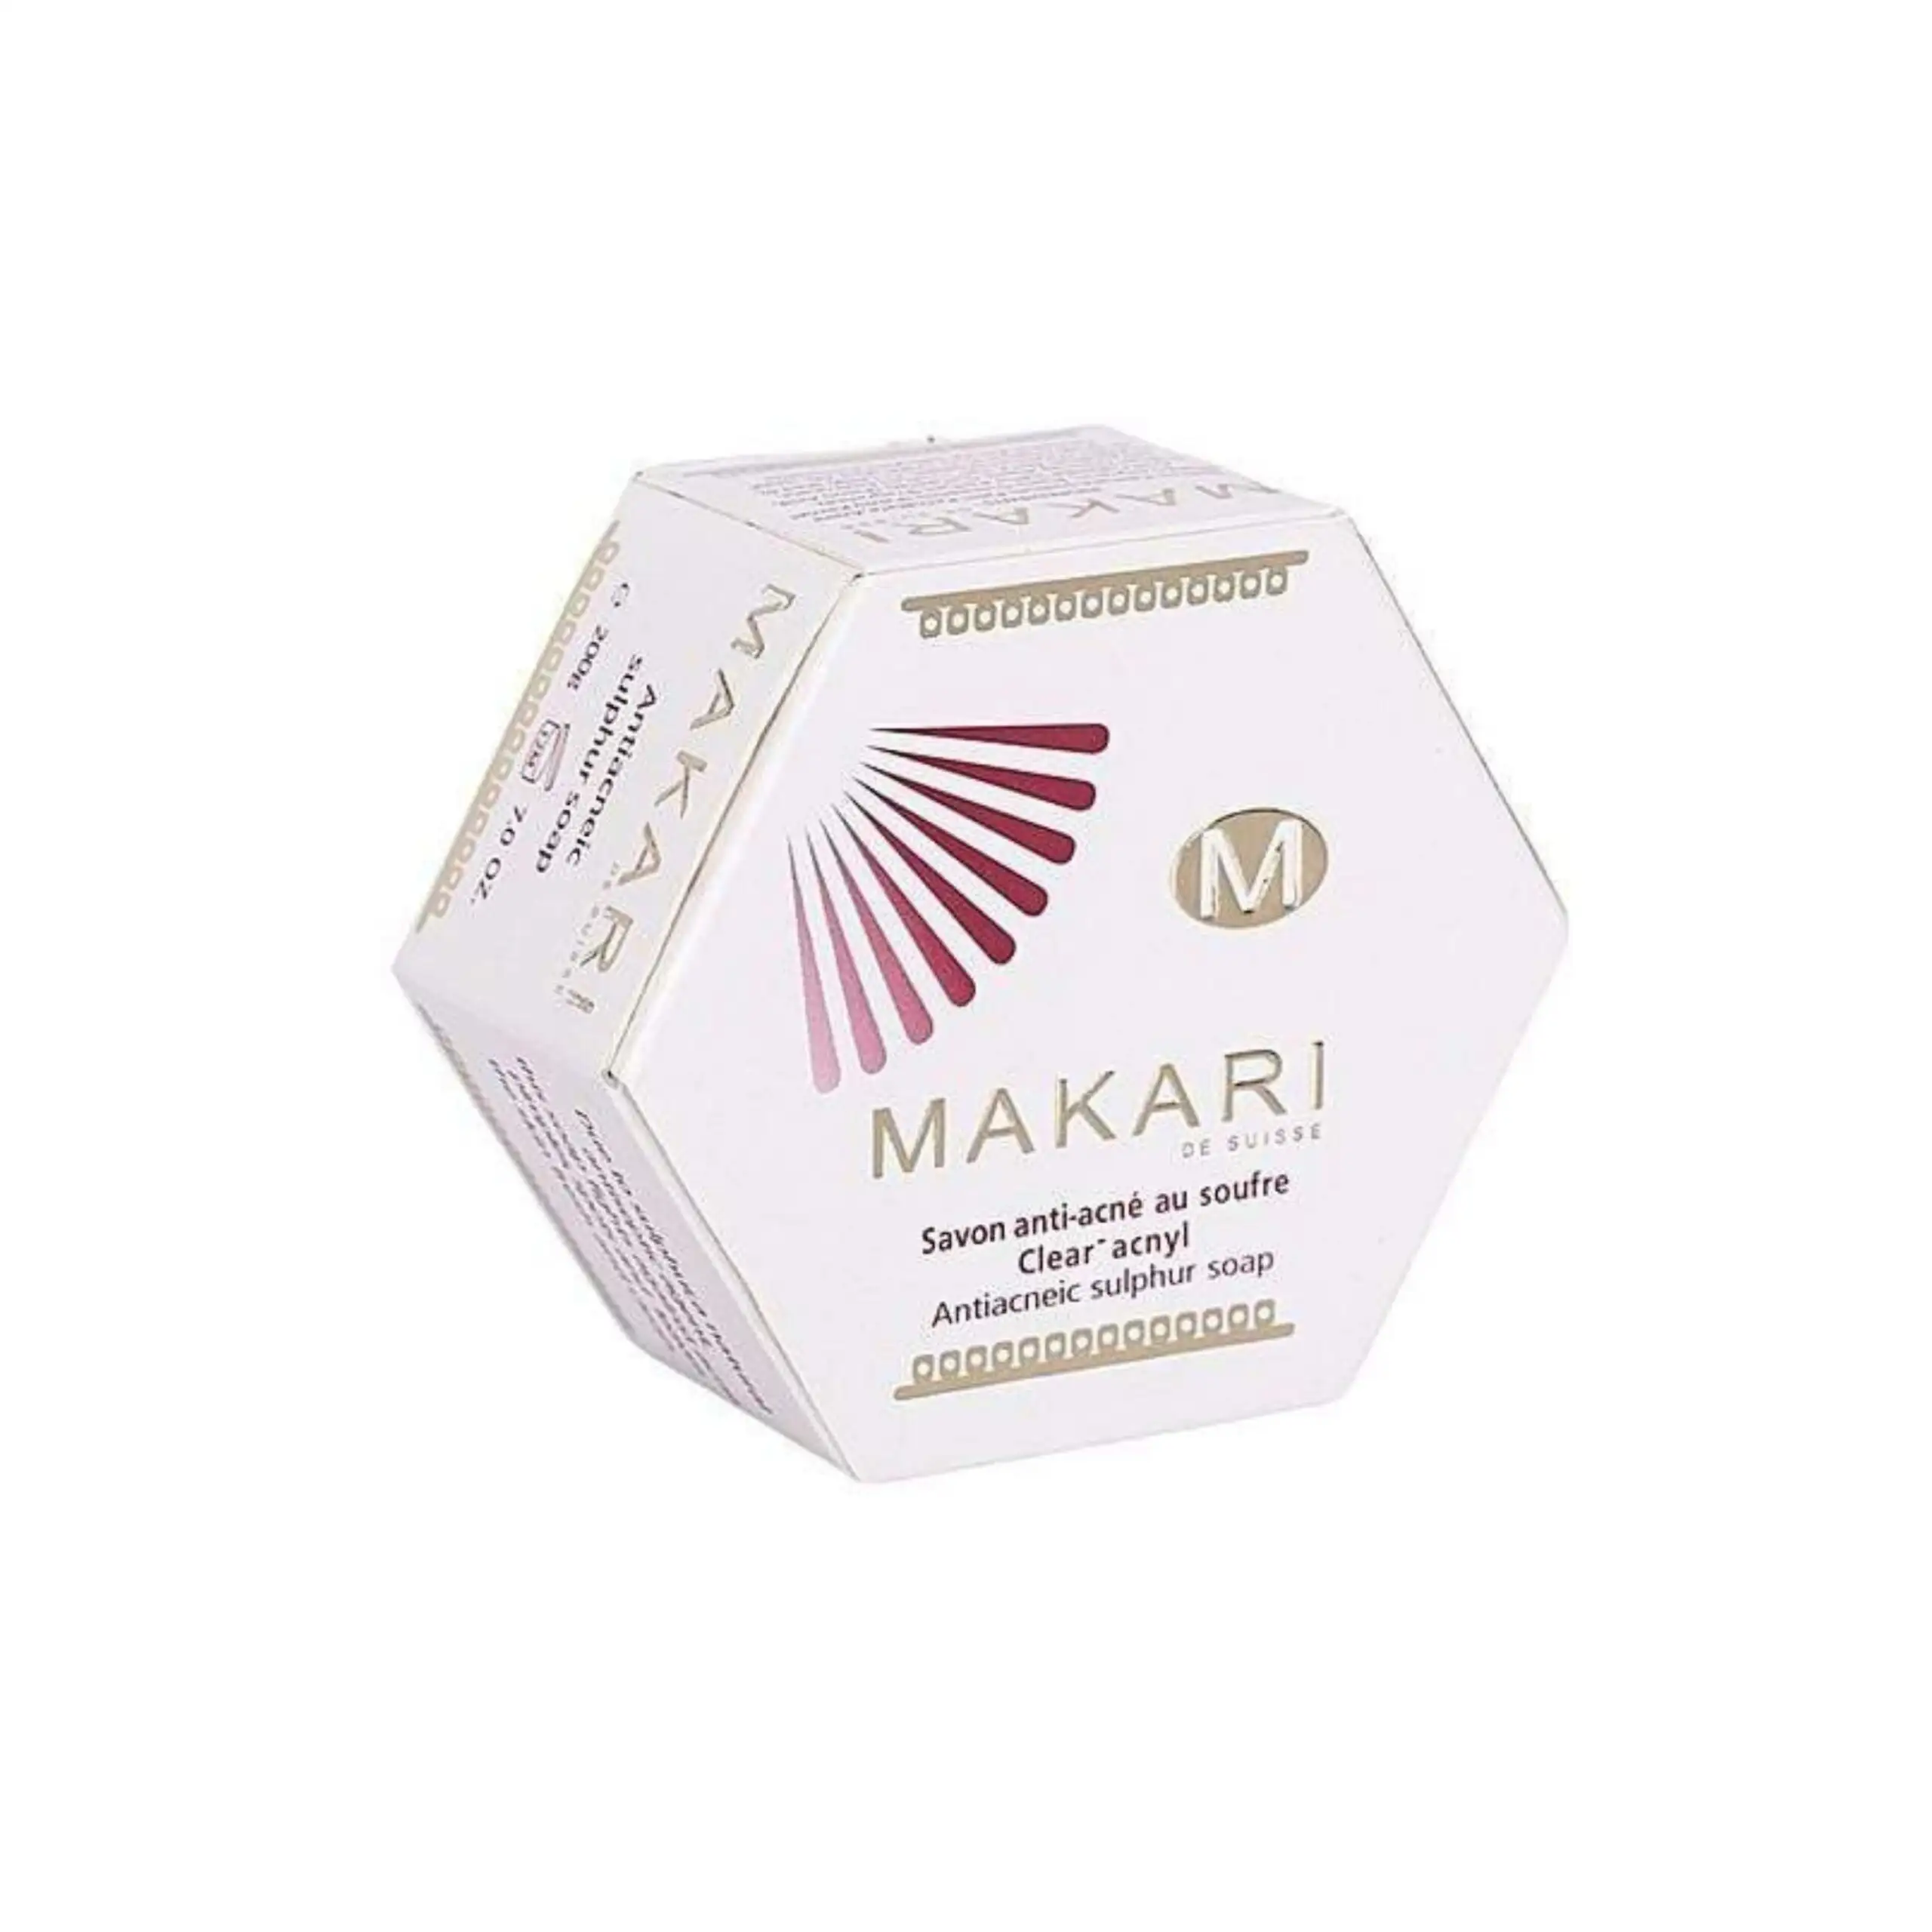 Makari savon anti acne au soufre 200g_1434. DIAYTAR SENEGAL - Votre Portail Vers l'Exclusivité. Explorez notre boutique en ligne pour trouver des produits uniques et exclusifs, conçus pour les amateurs de qualité.